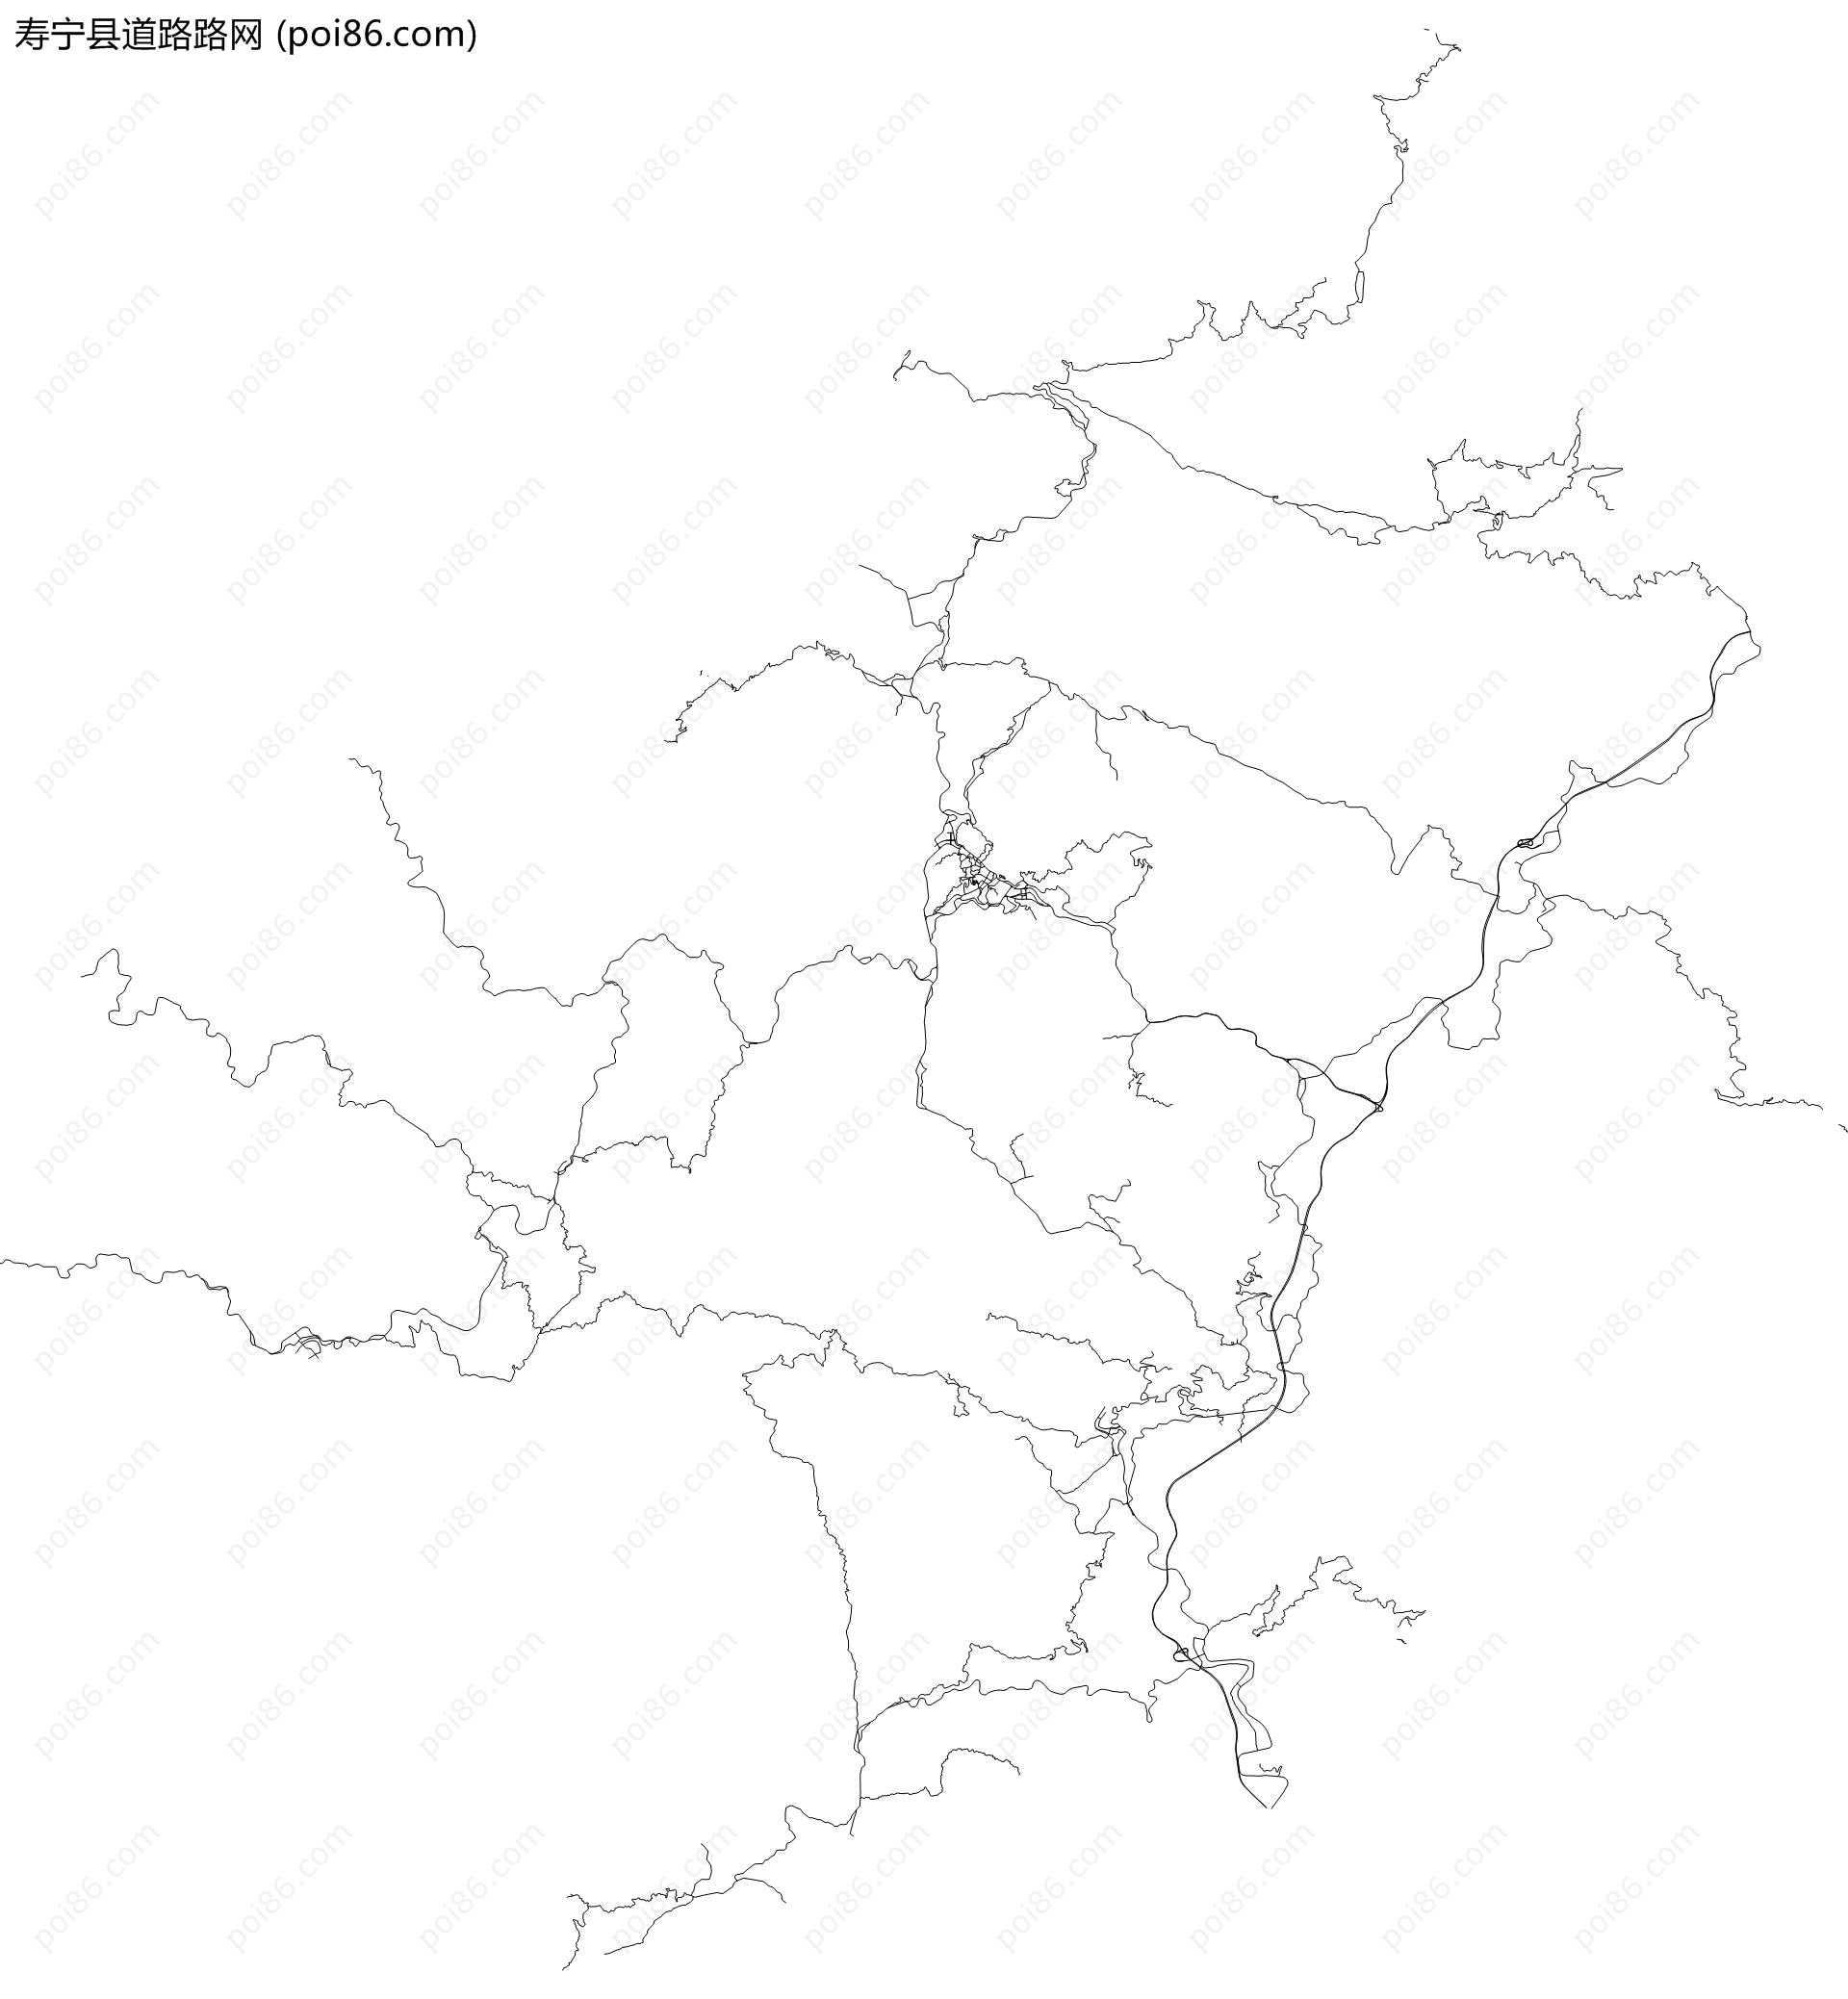 寿宁县道路路网地图